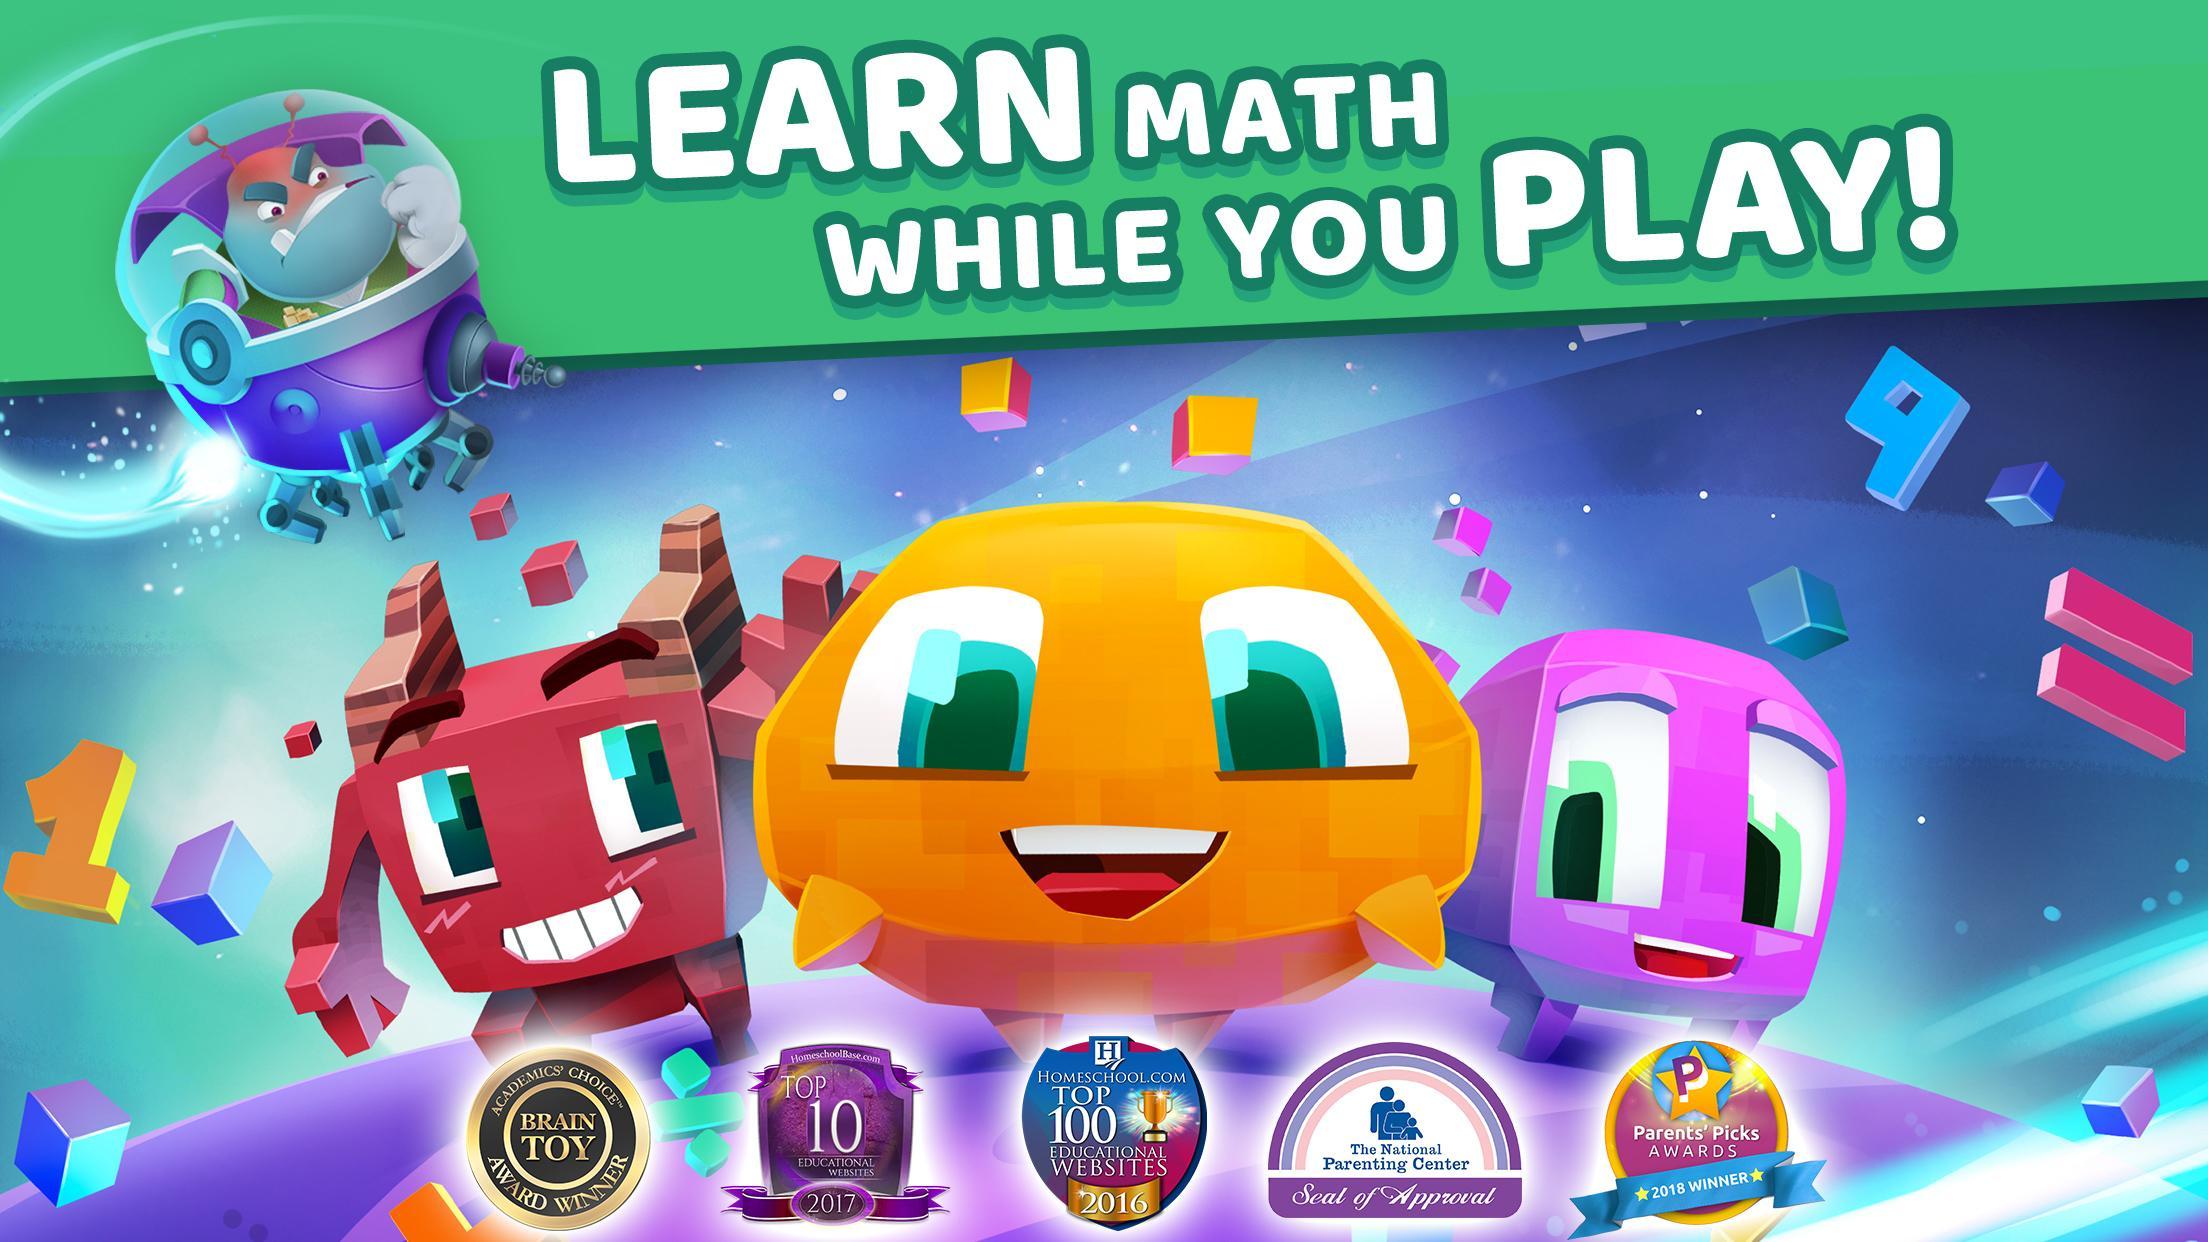 Matific Galaxy - Maths Games for 1st Graders 2.2.2 Screenshot 13